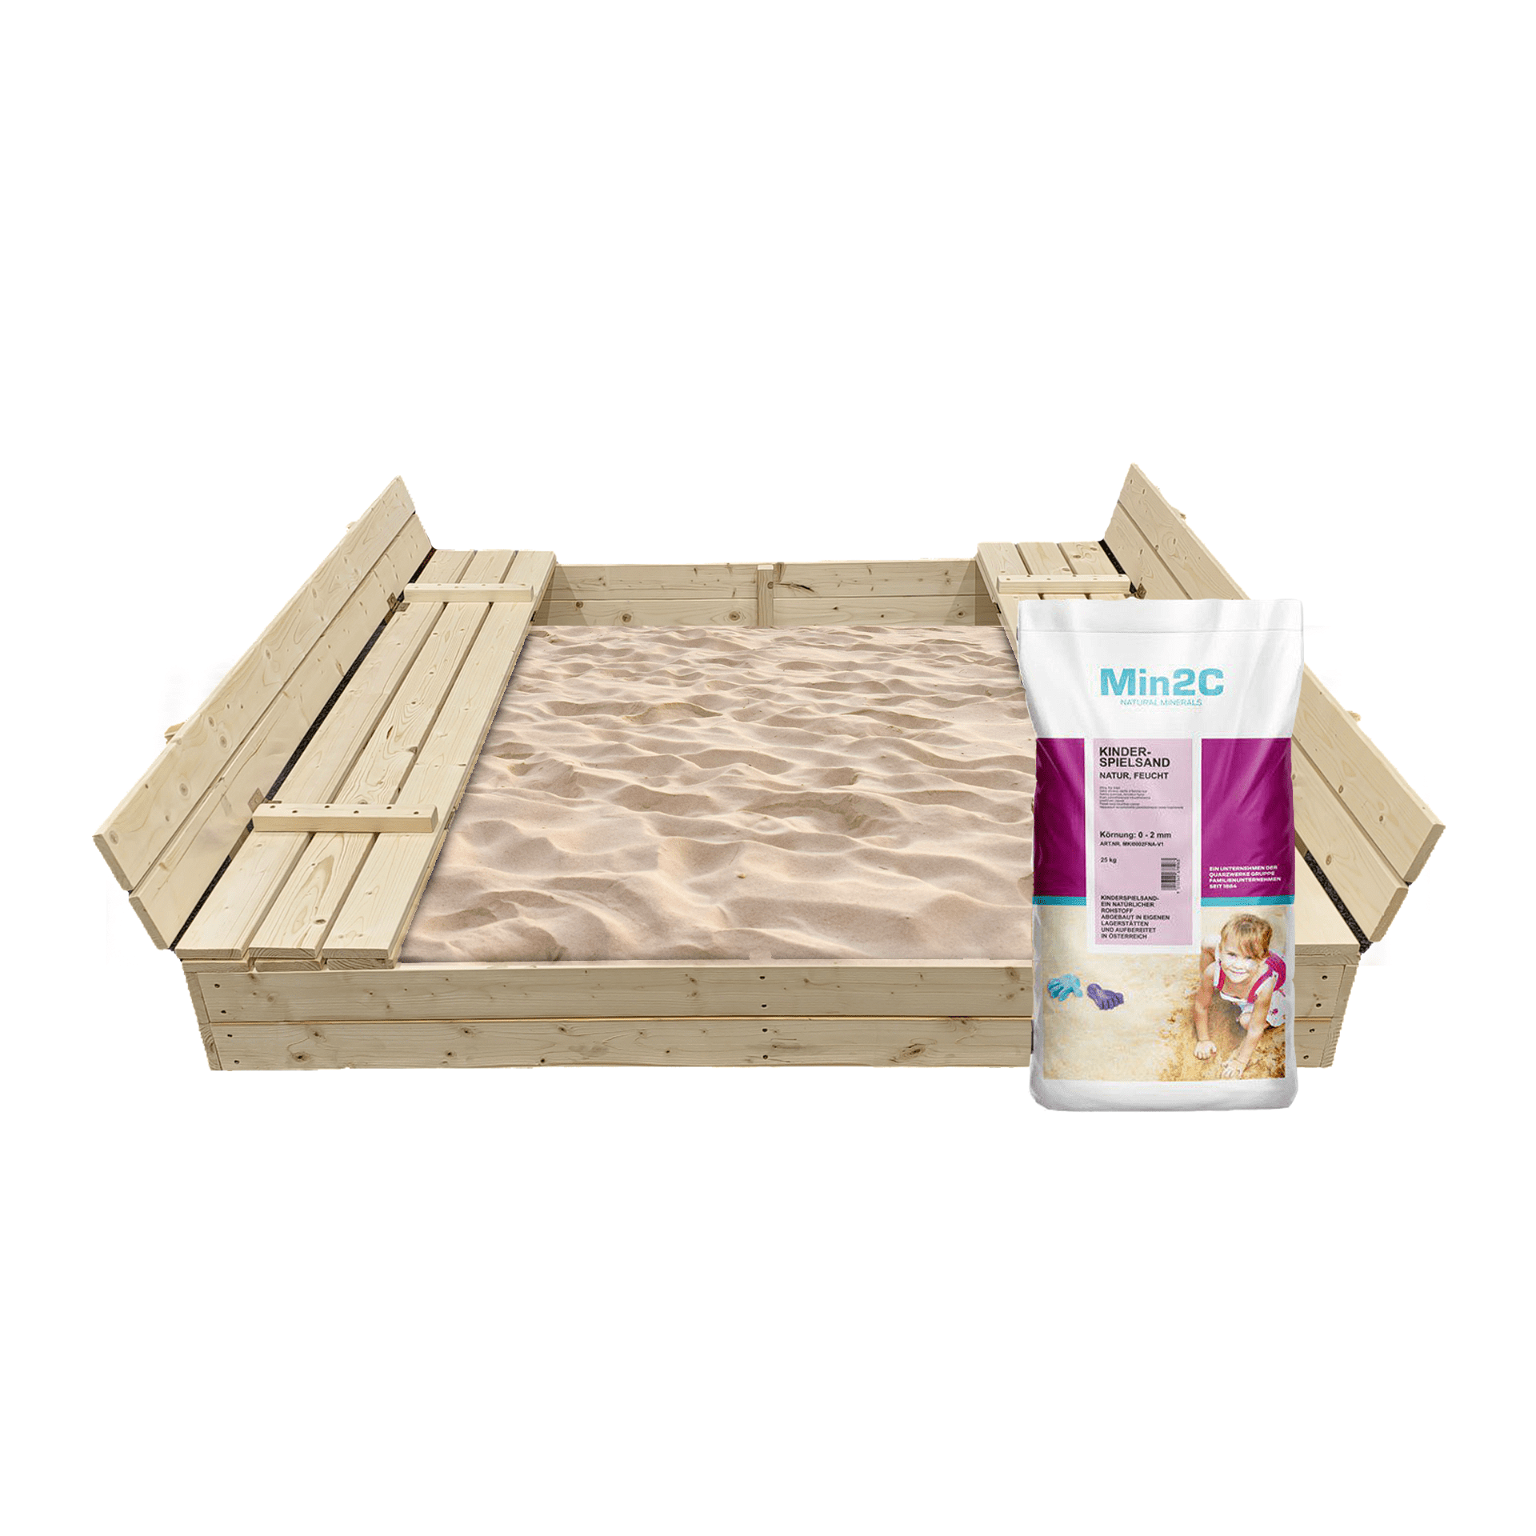 Smėlio dėžė Bonus Orbis su patiesalu ir 400 kg smėlio, 160x160 cm